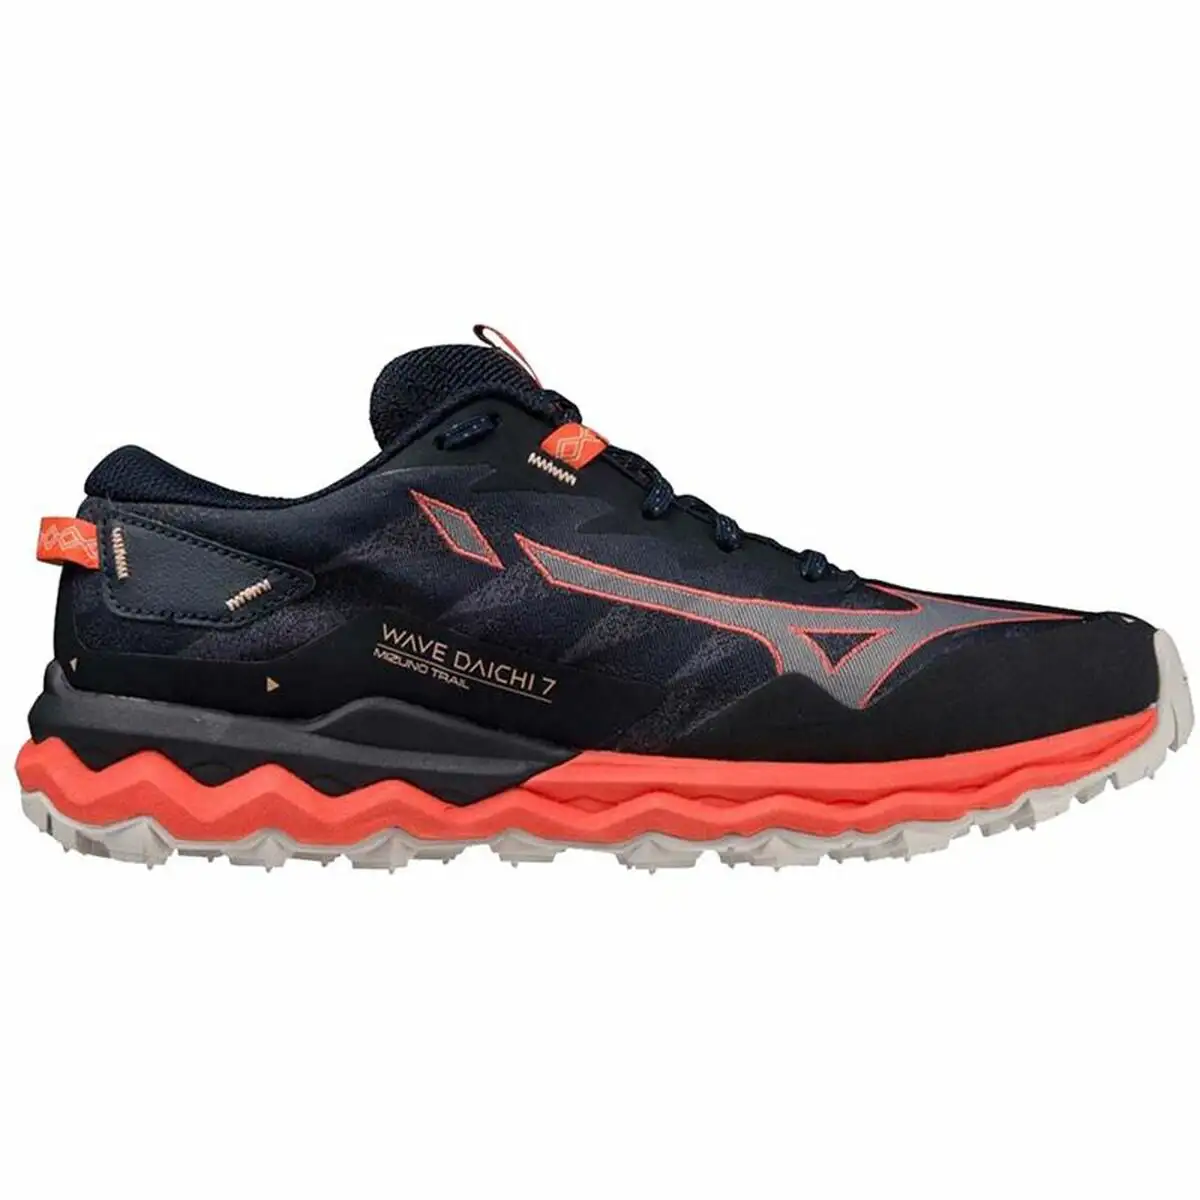 Chaussures de running pour adultes mizuno wave daichi 7 femme noir_7788. Bienvenue sur DIAYTAR SENEGAL - Où le Shopping est une Affaire Personnelle. Découvrez notre sélection et choisissez des produits qui reflètent votre unicité et votre individualité.